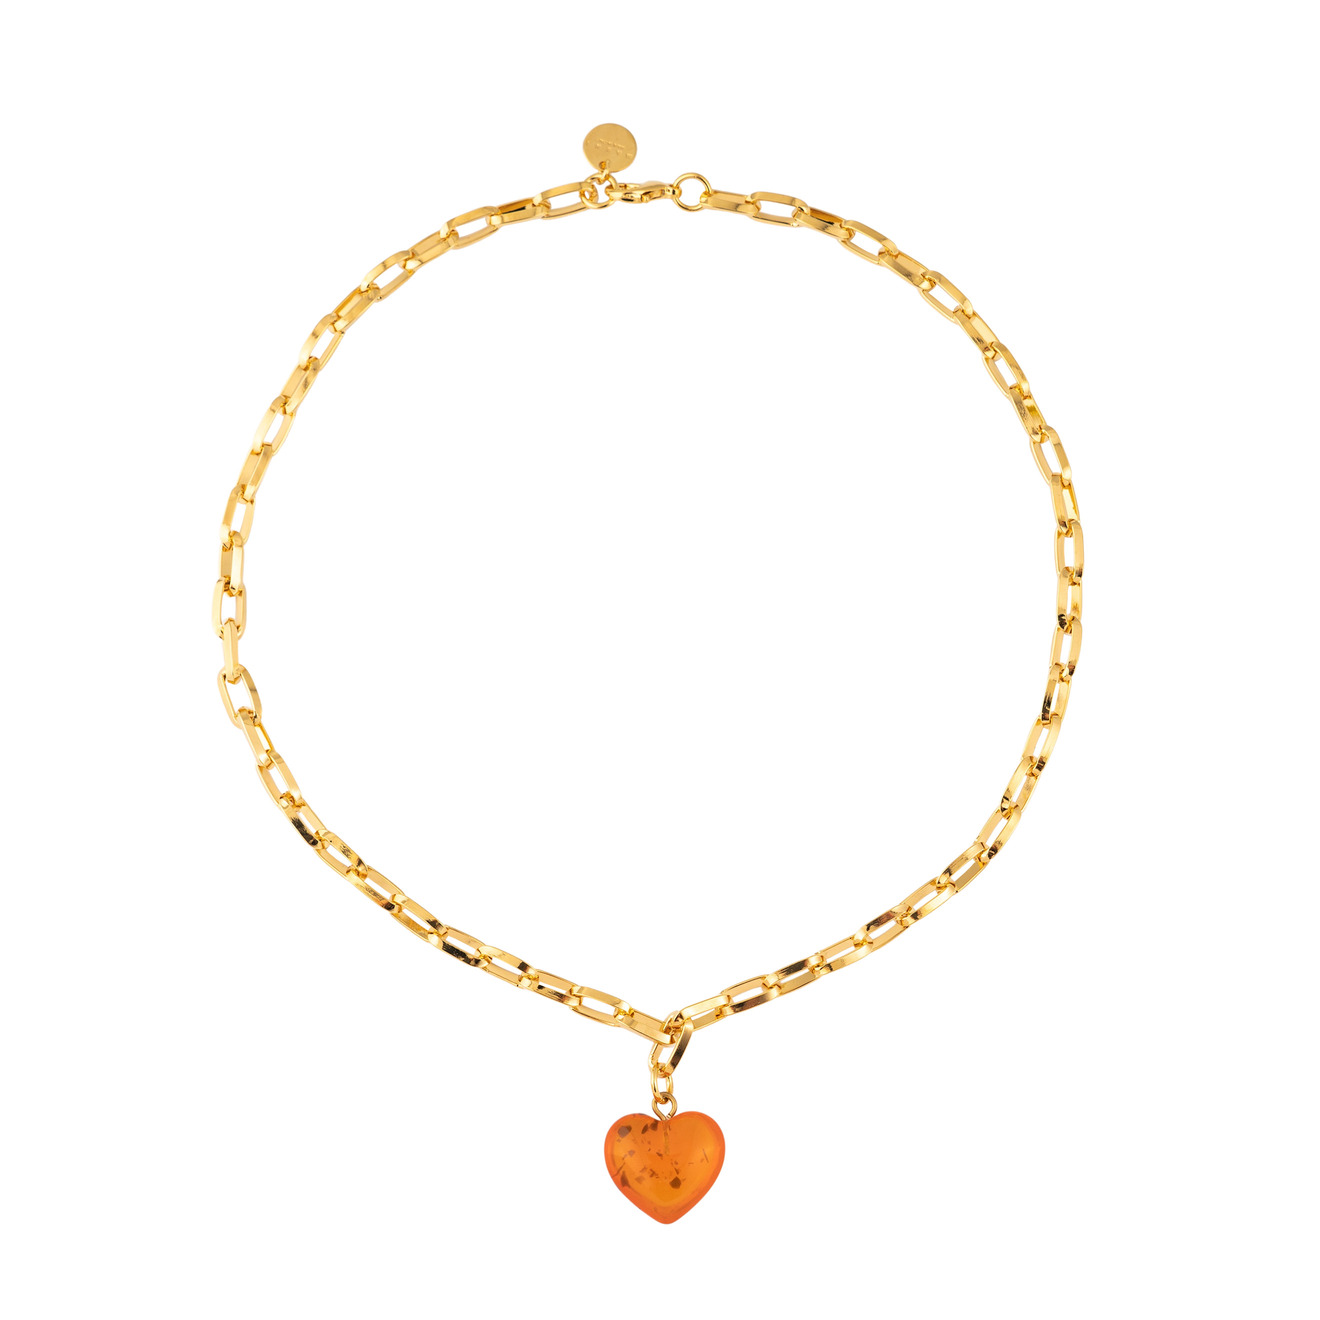 Marni Золотистое колье цепь с оранжевой подвеской сердце цена и фото